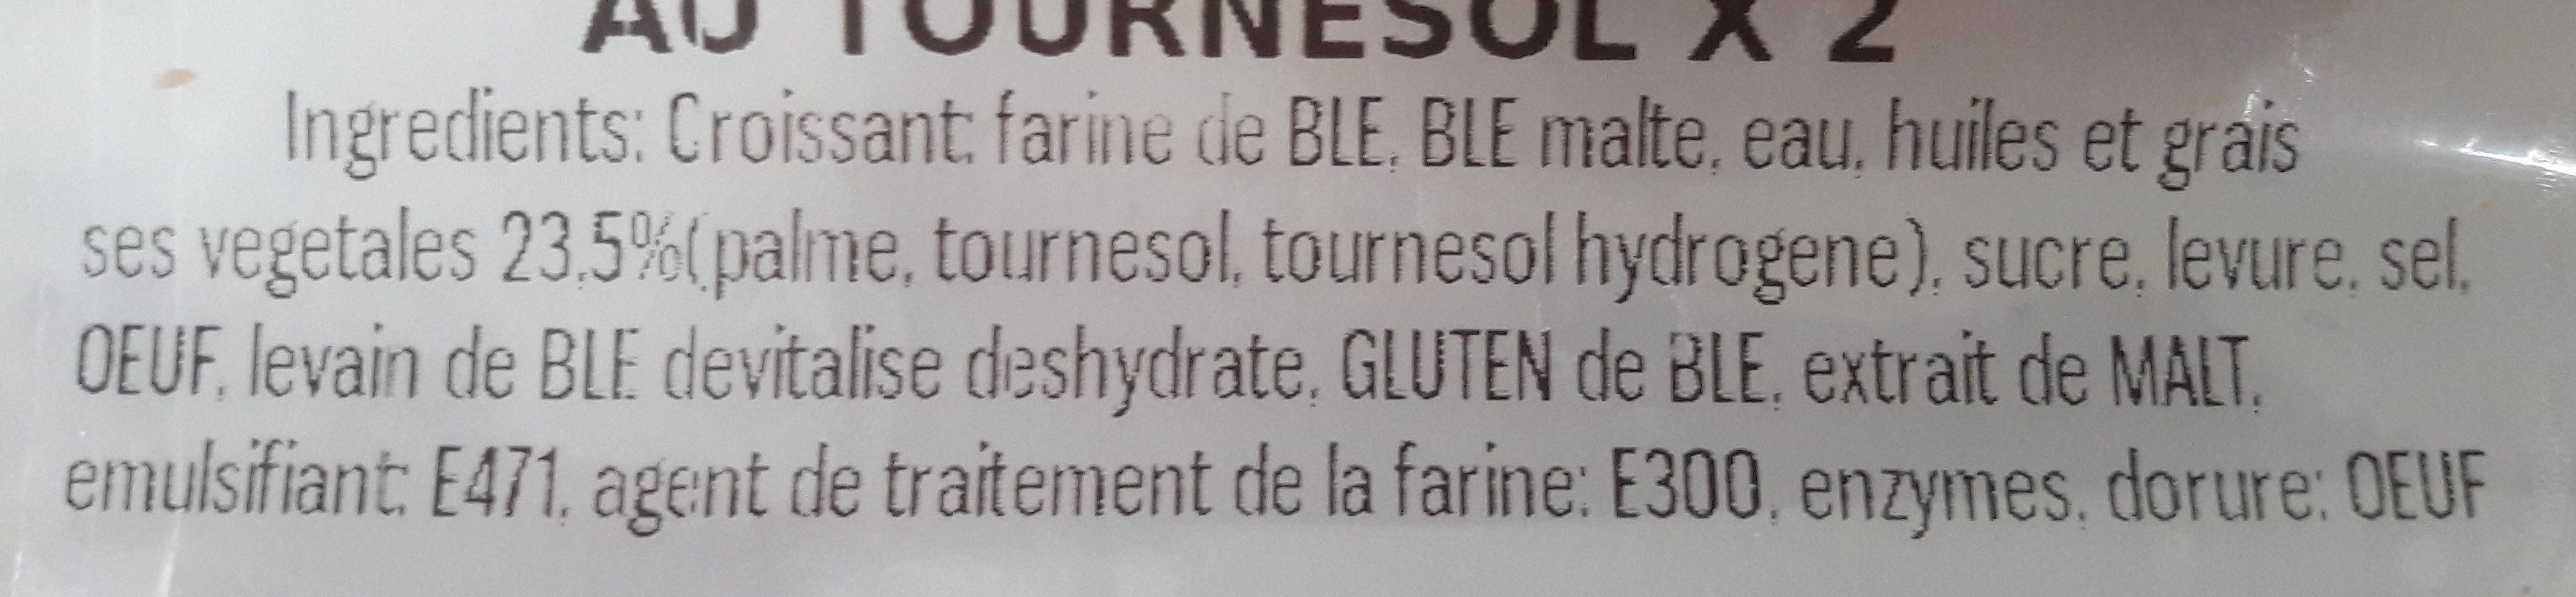 Croissant à la margarine - Ingrediënten - fr